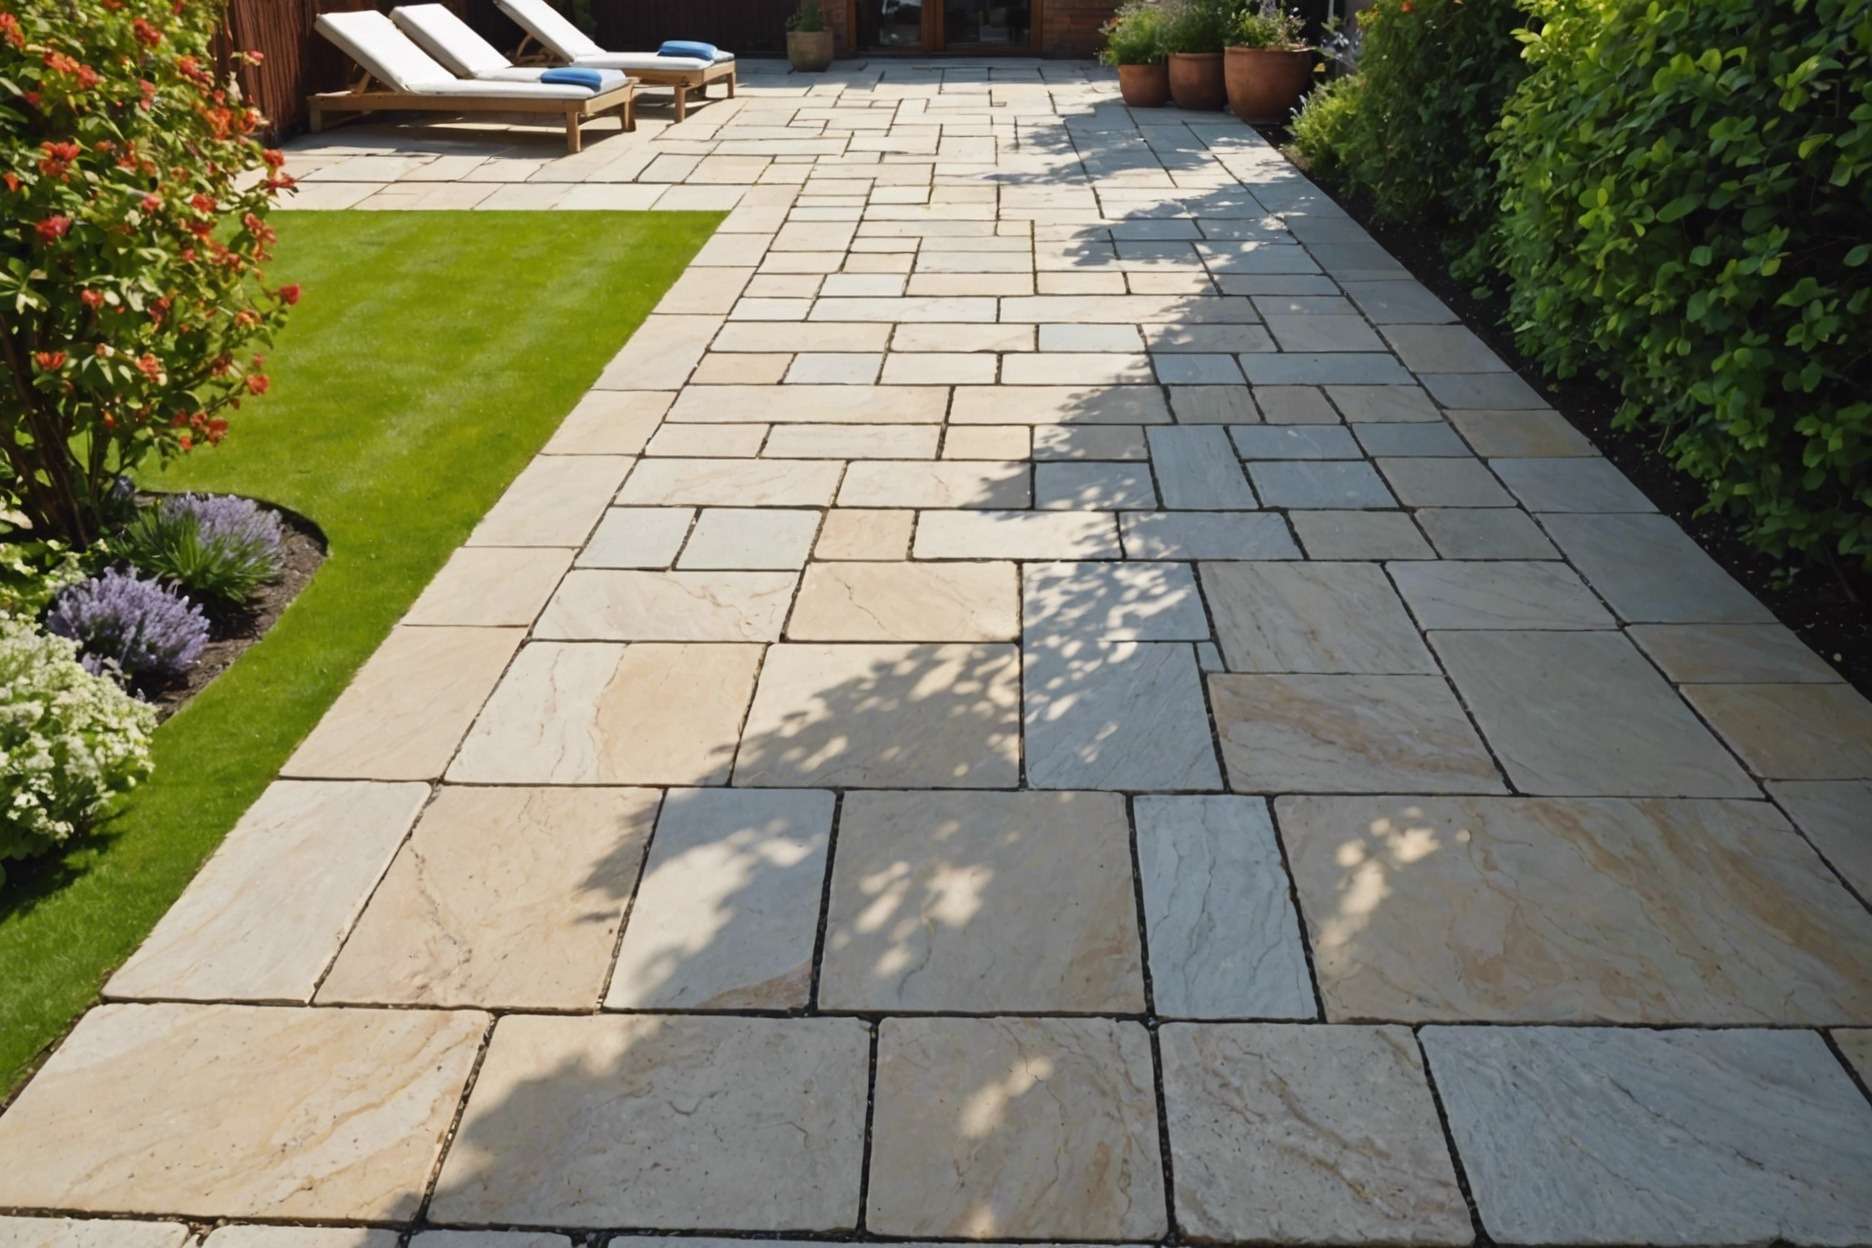 Granite and sandstone paving in sunny garden